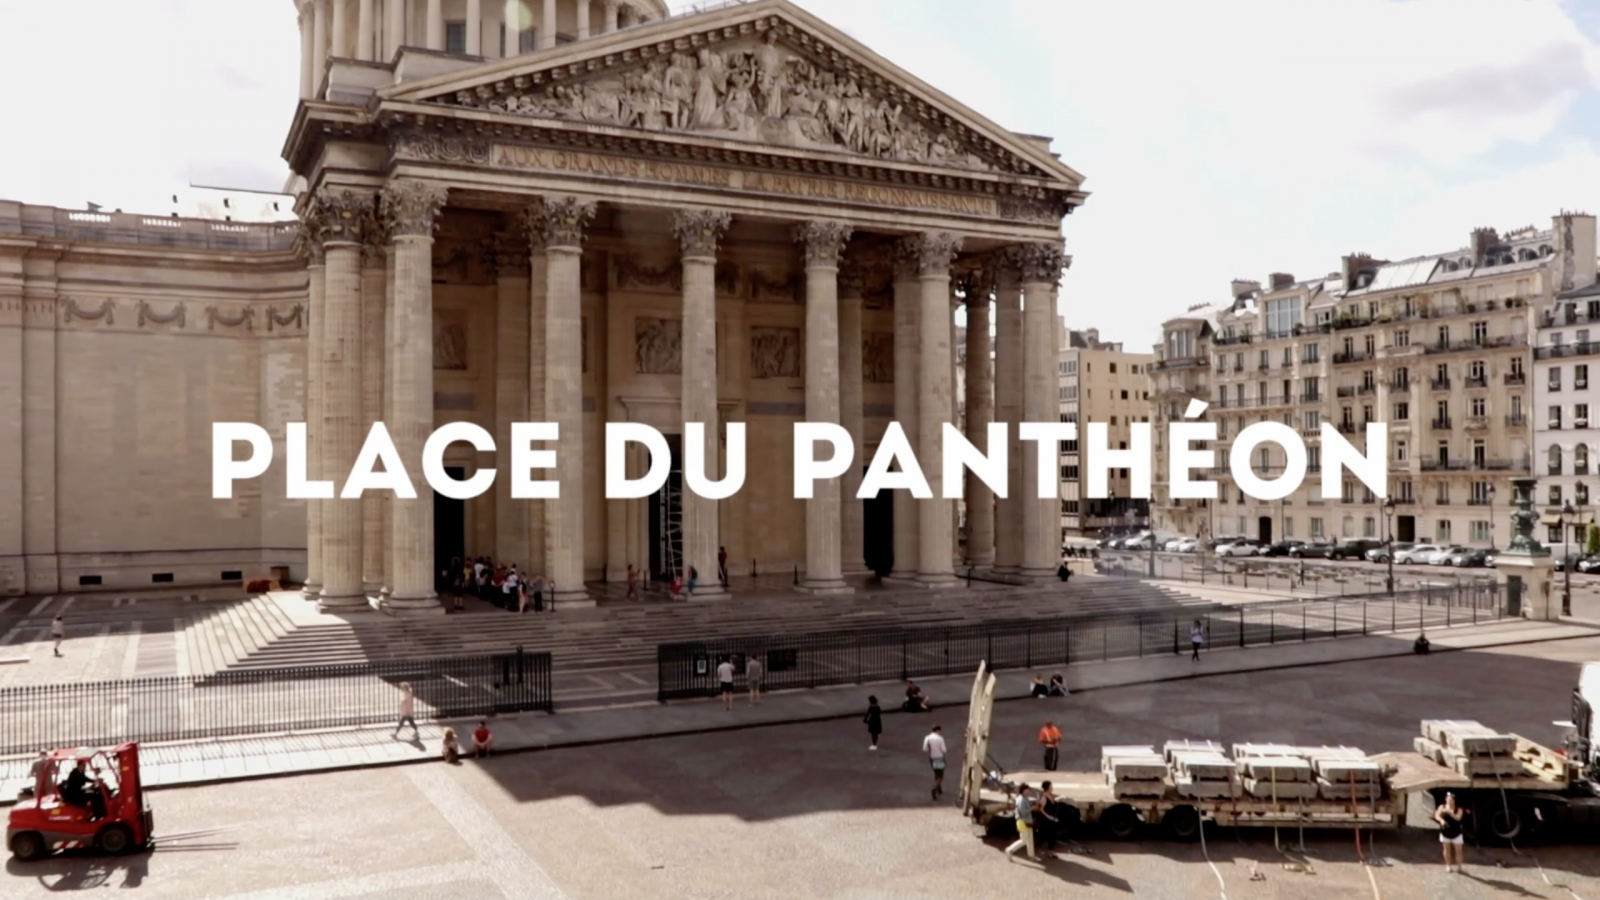 Paris Places - Place du Panthéon